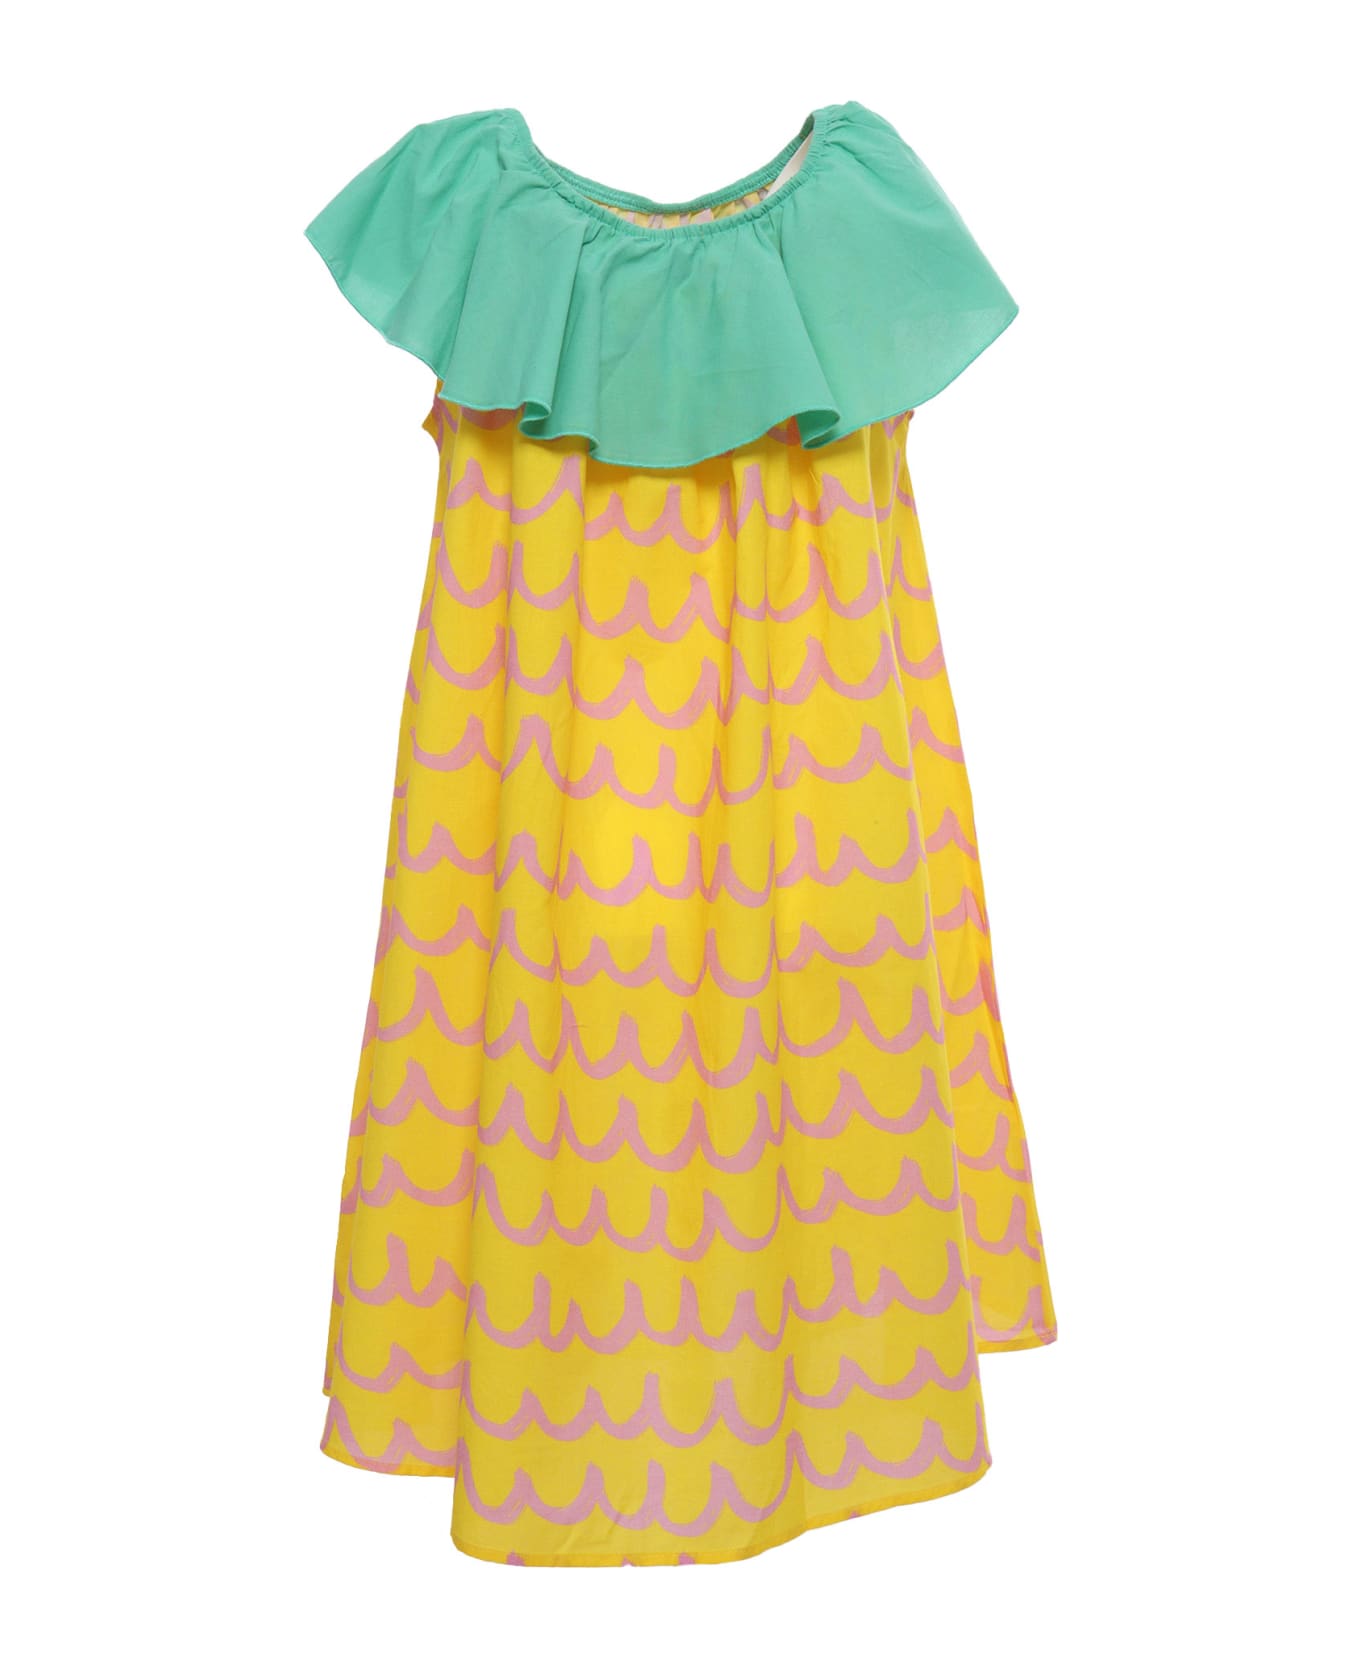 Stella McCartney Kids Yellow And Green Dress - YELLOW